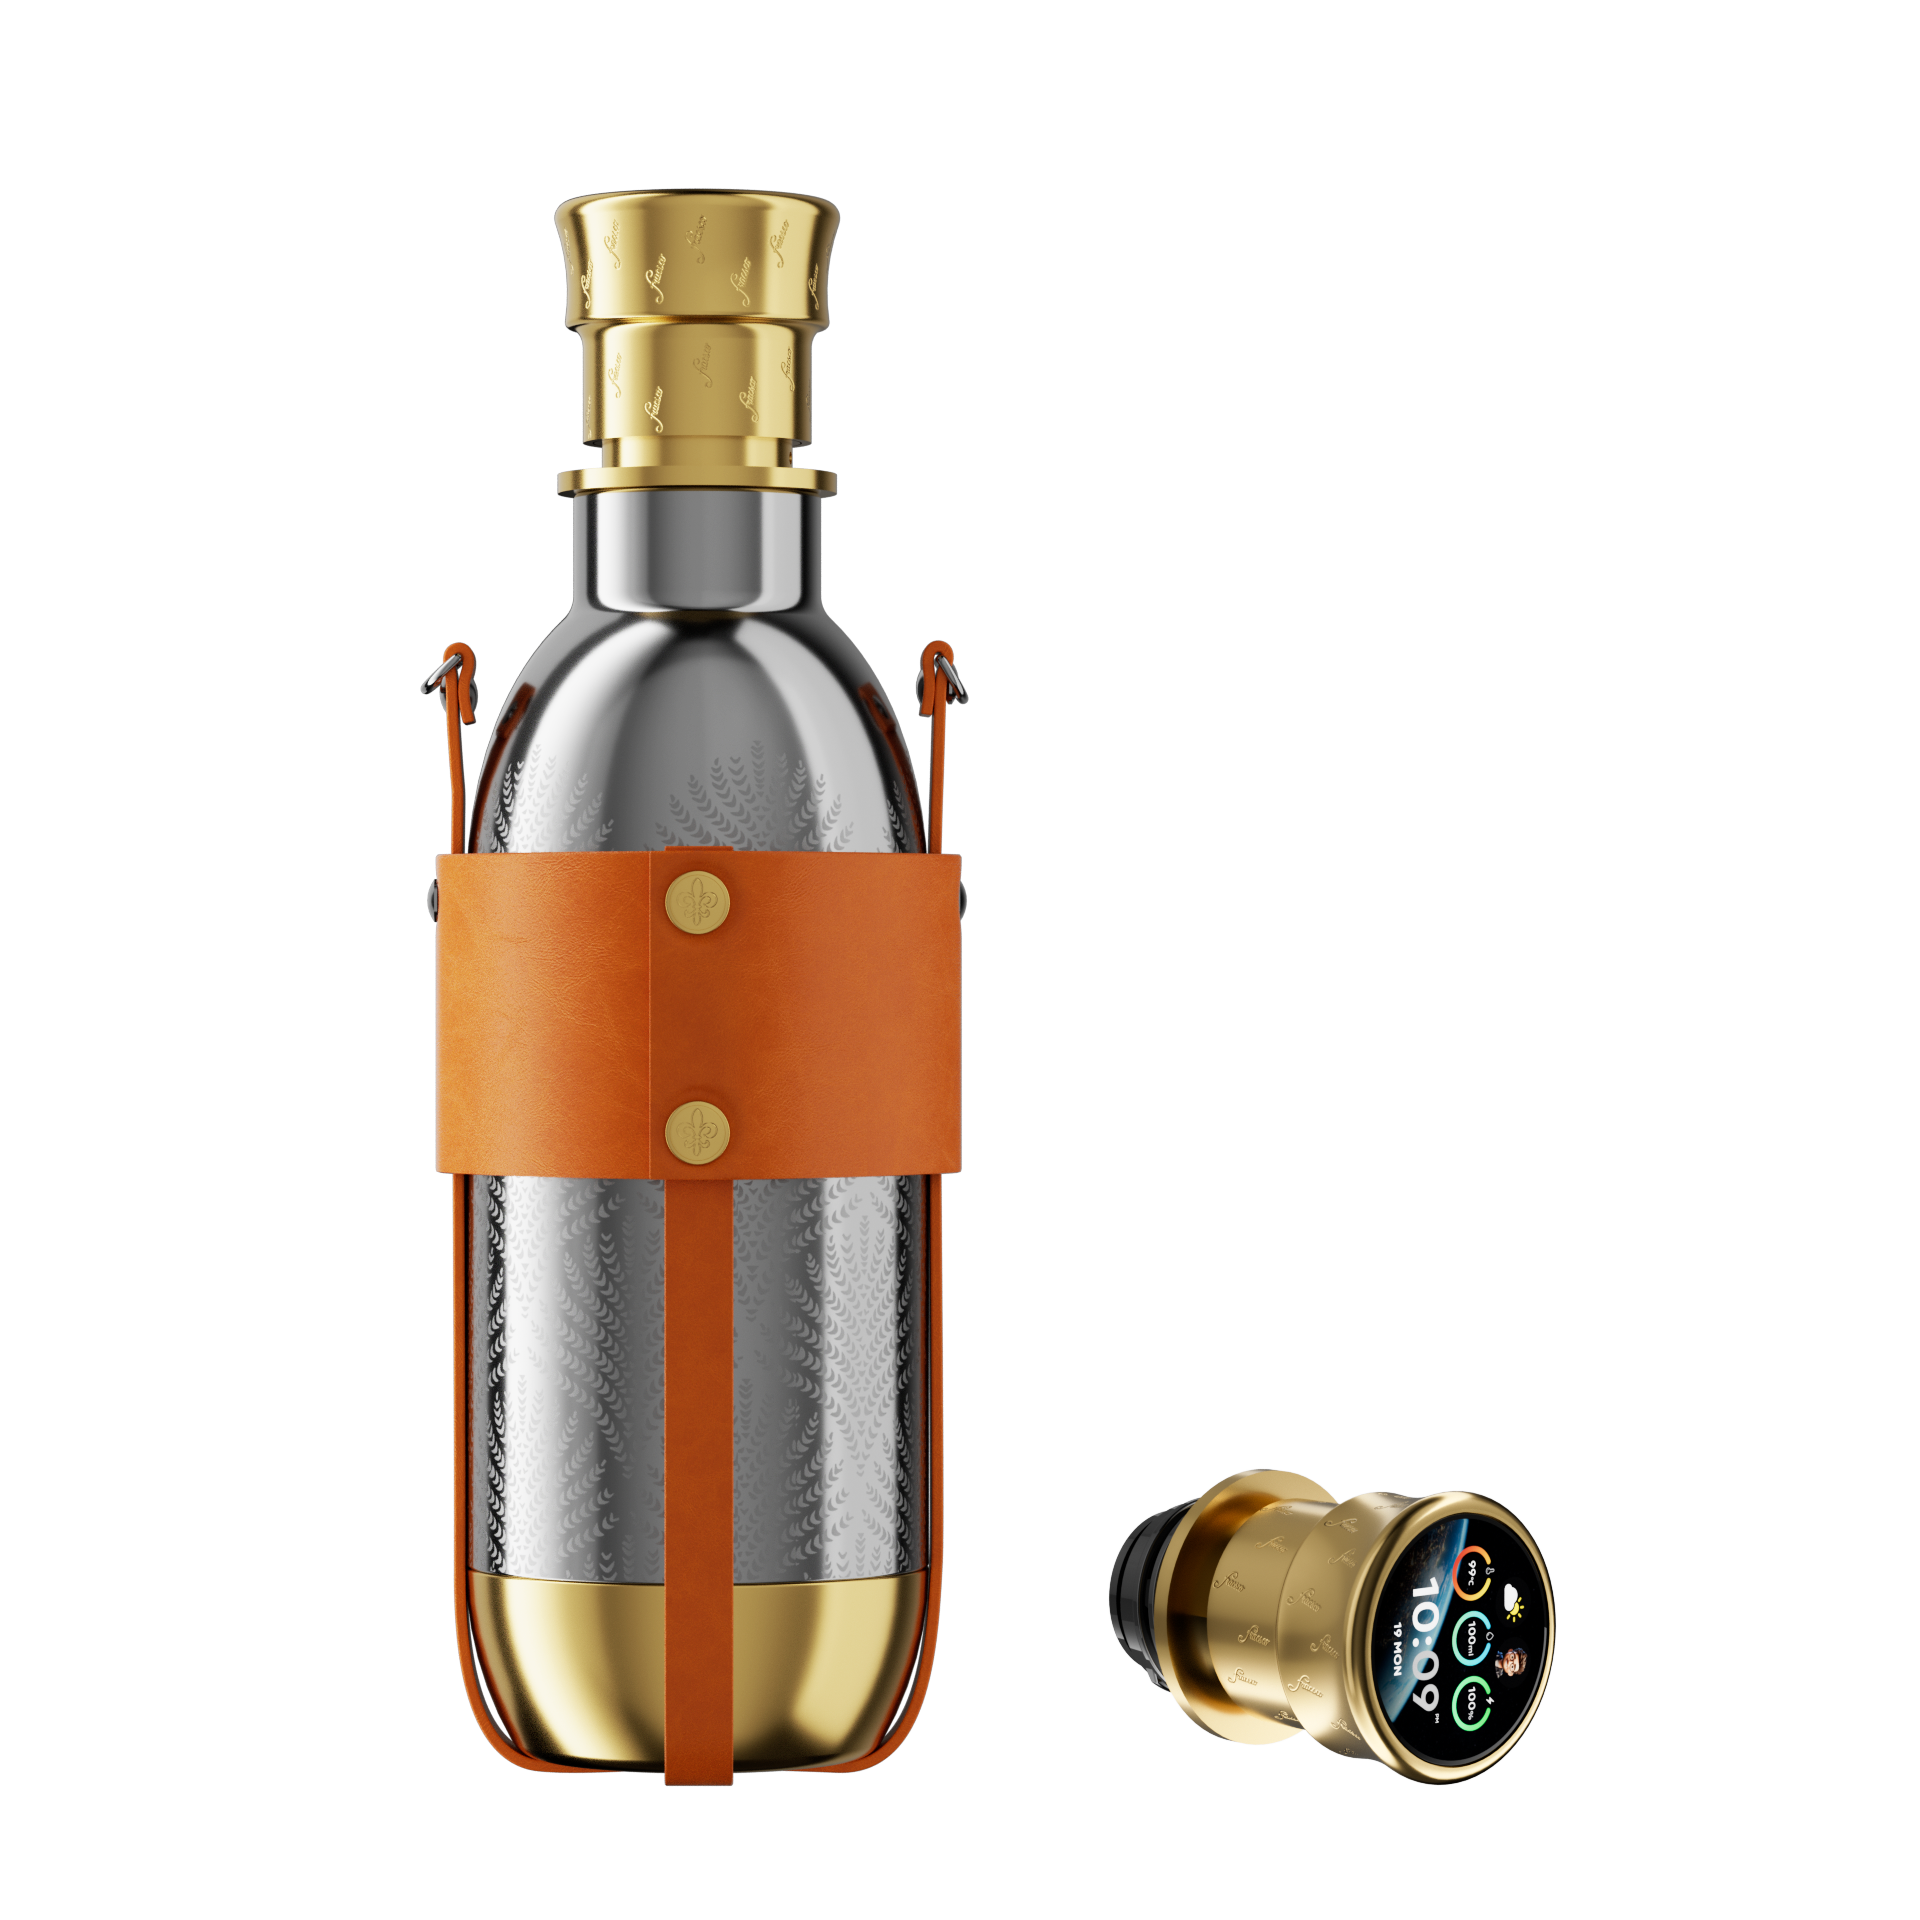 Die Zukunft des Trinkens: Die Fracsco Mars Smart Water Bottle im Test